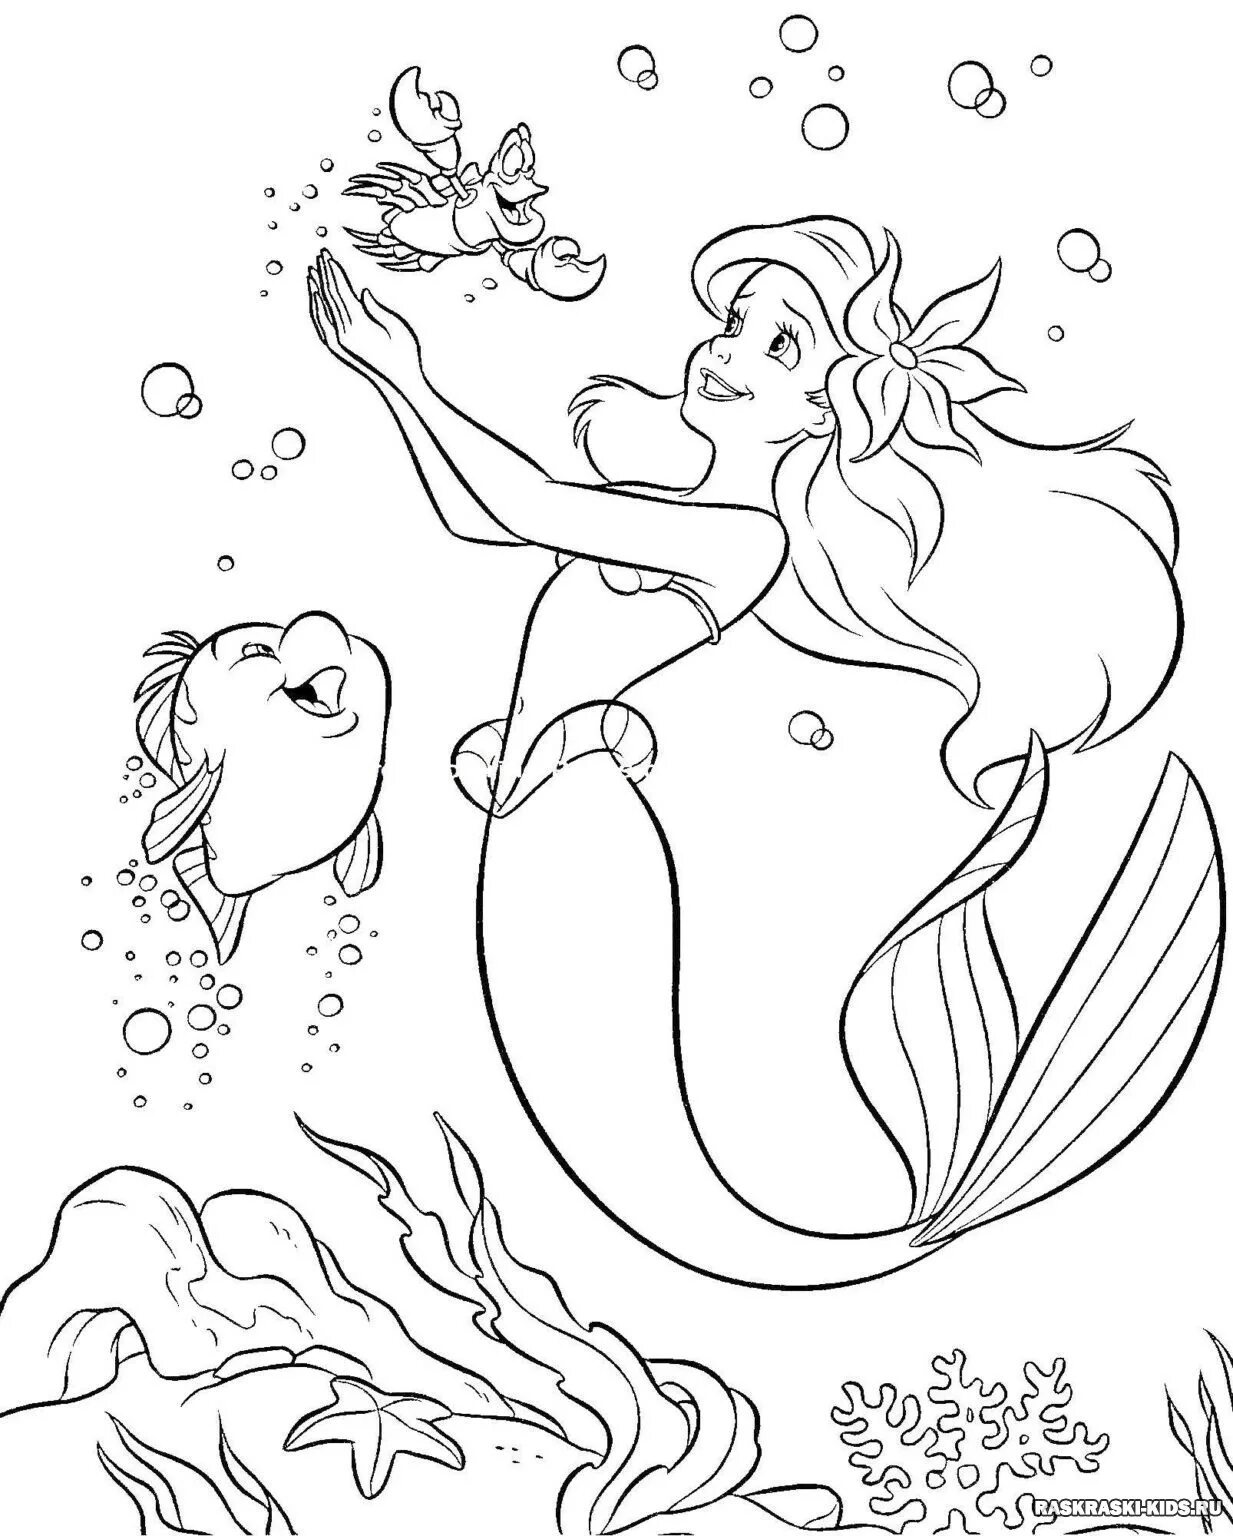 Mermaid pattern #3